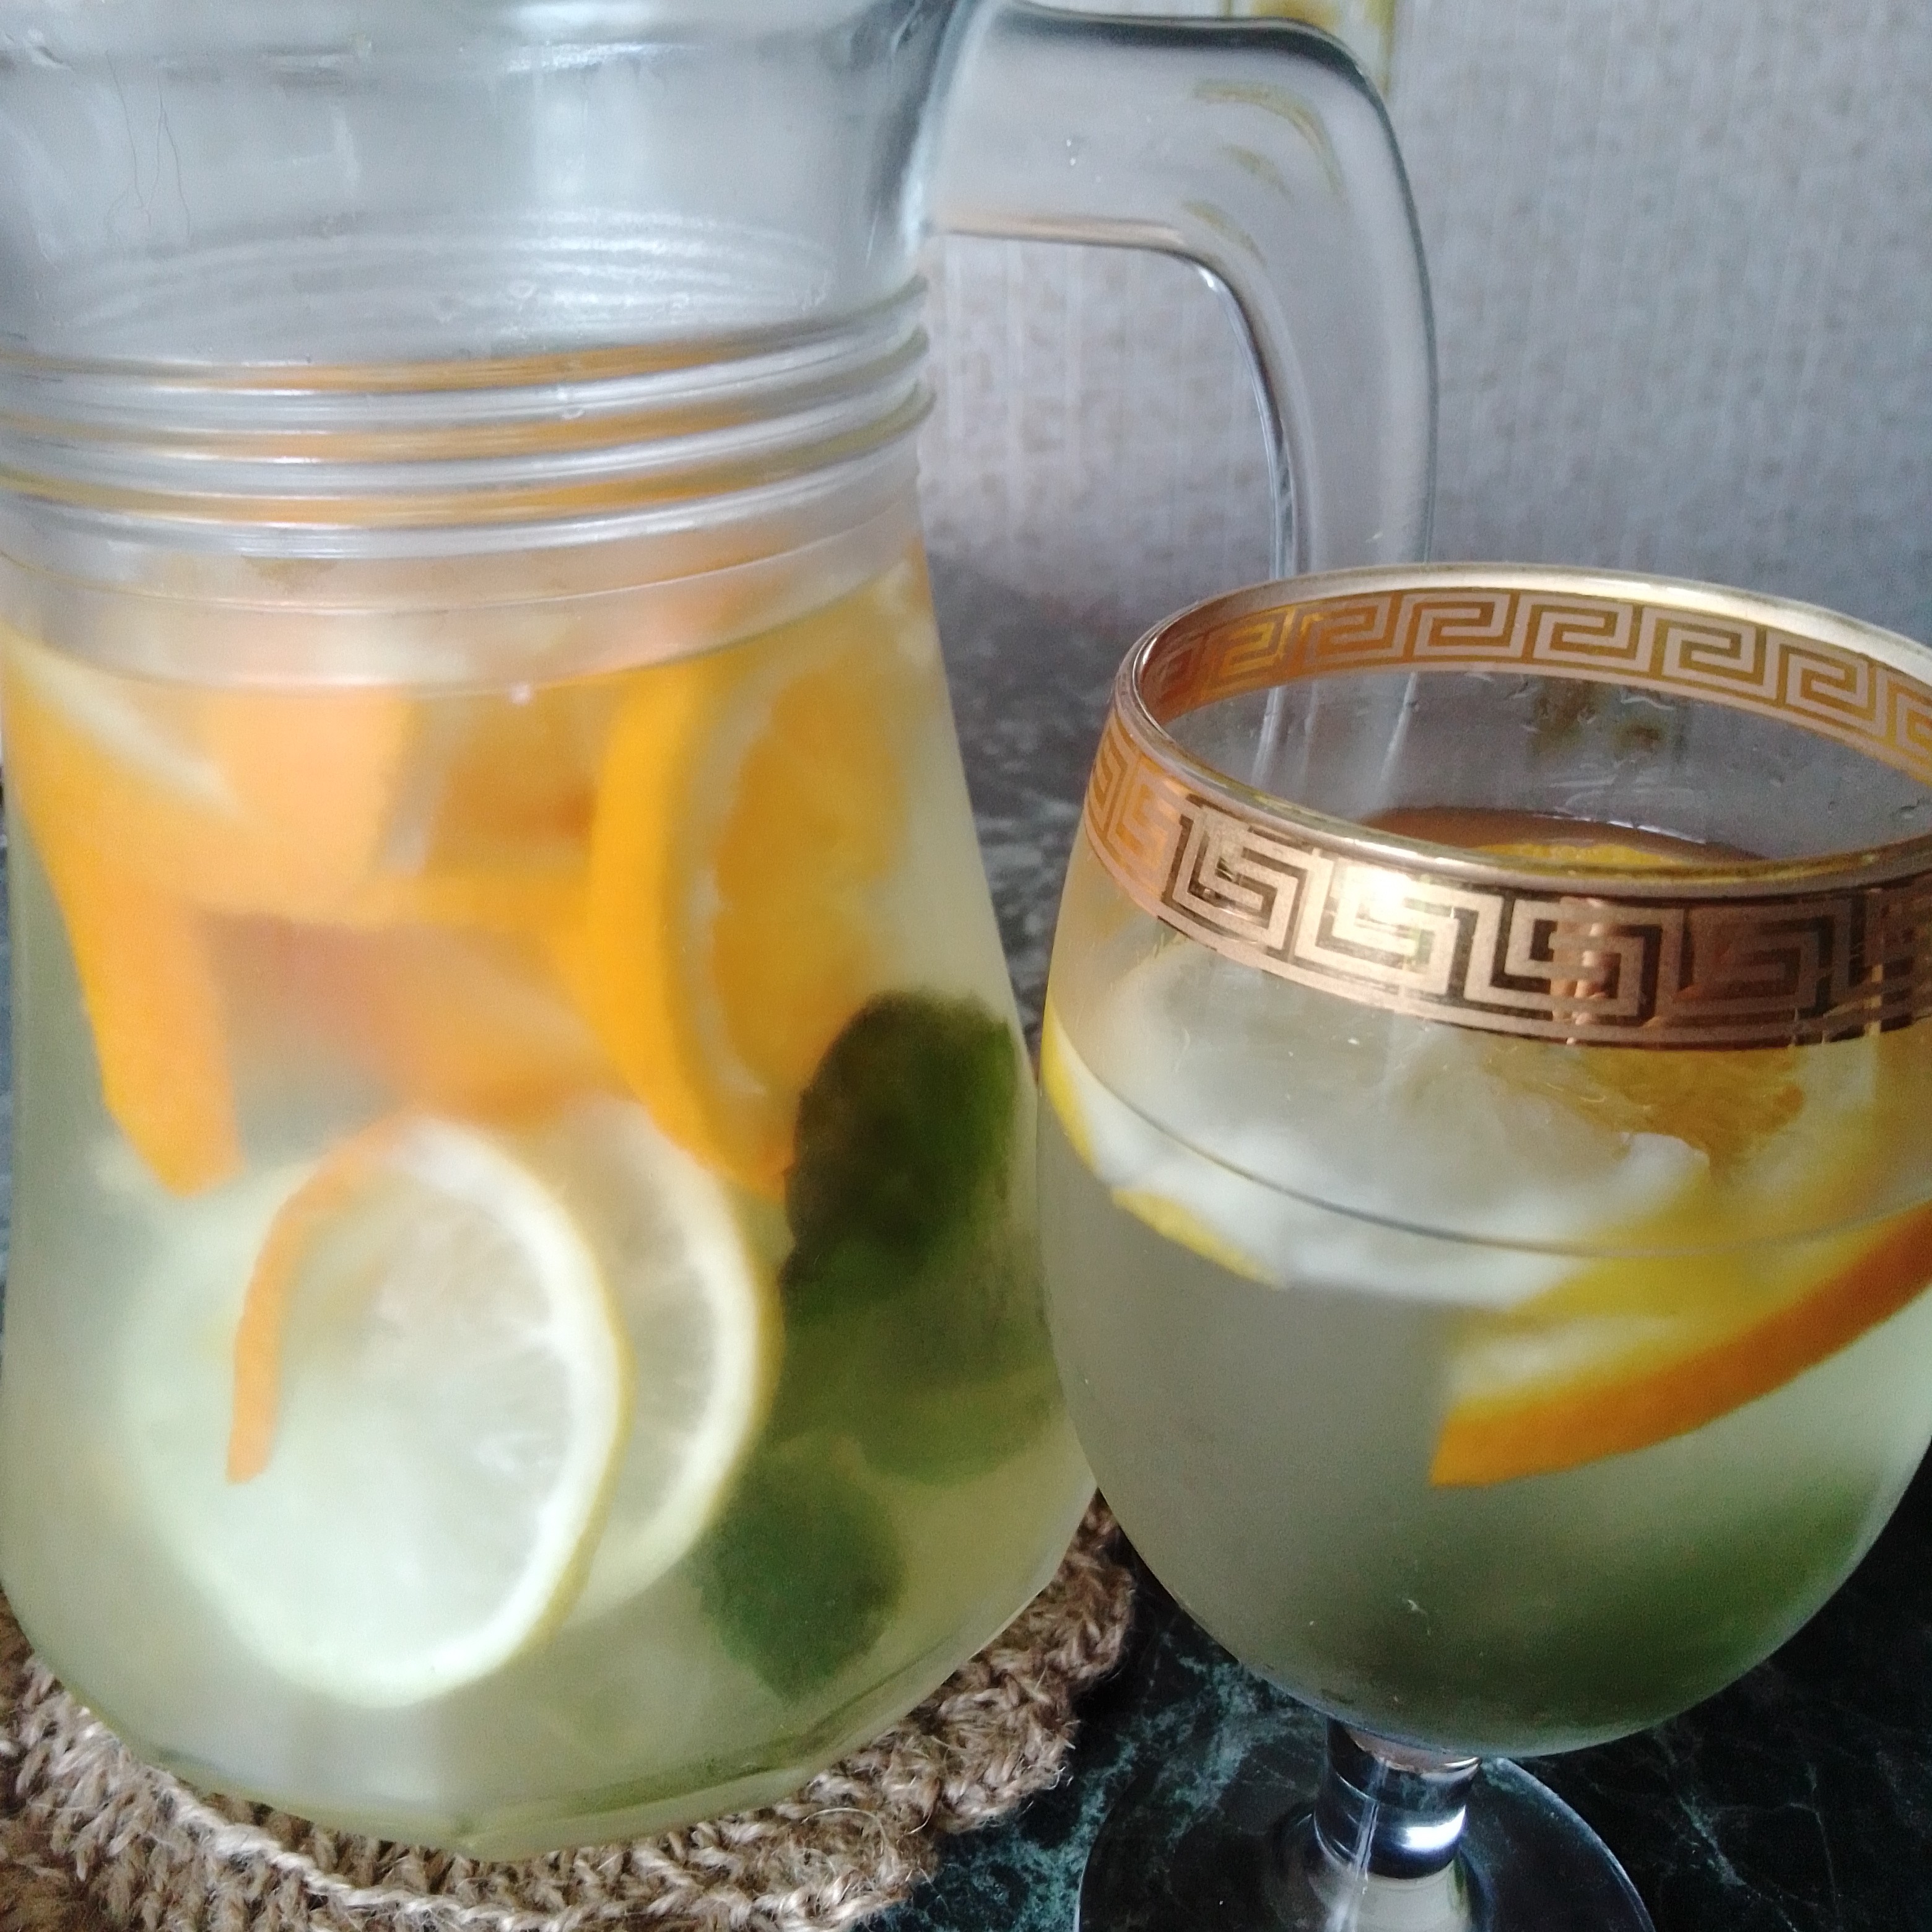 Домашний лимонад из апельсинов и лимонов